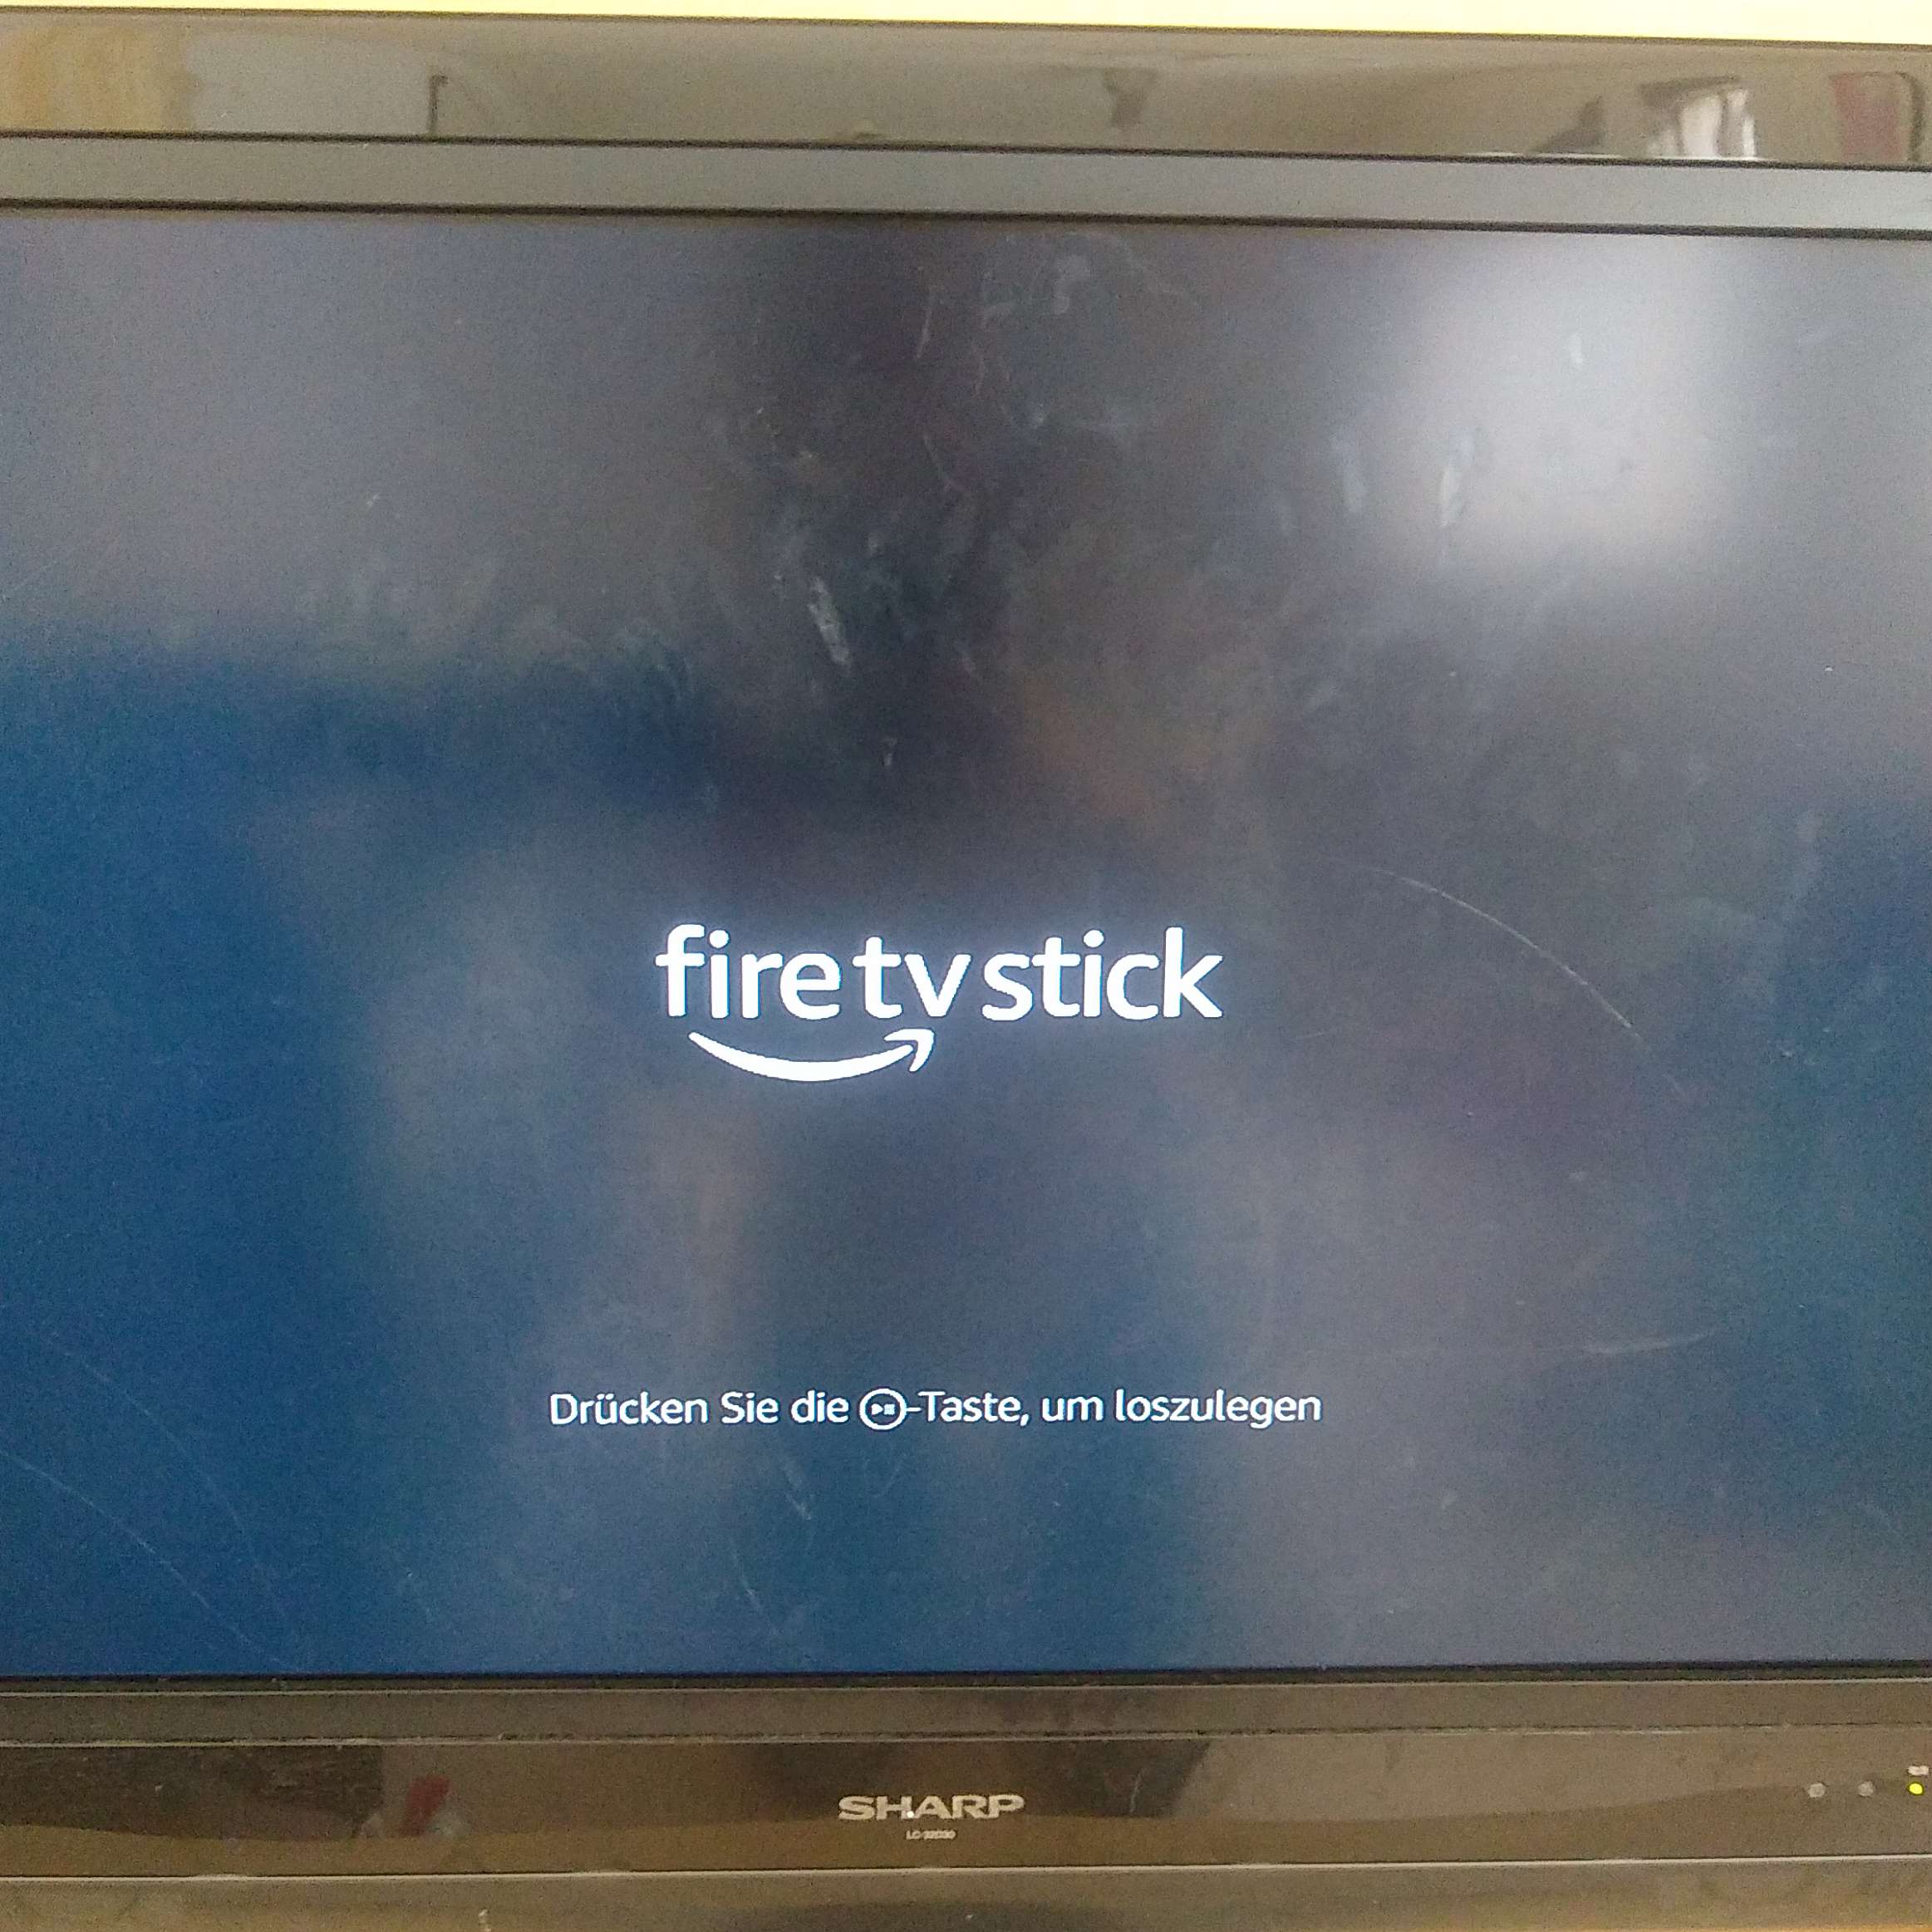 05.Fire TV Stick_コード接続後のテレビ画面